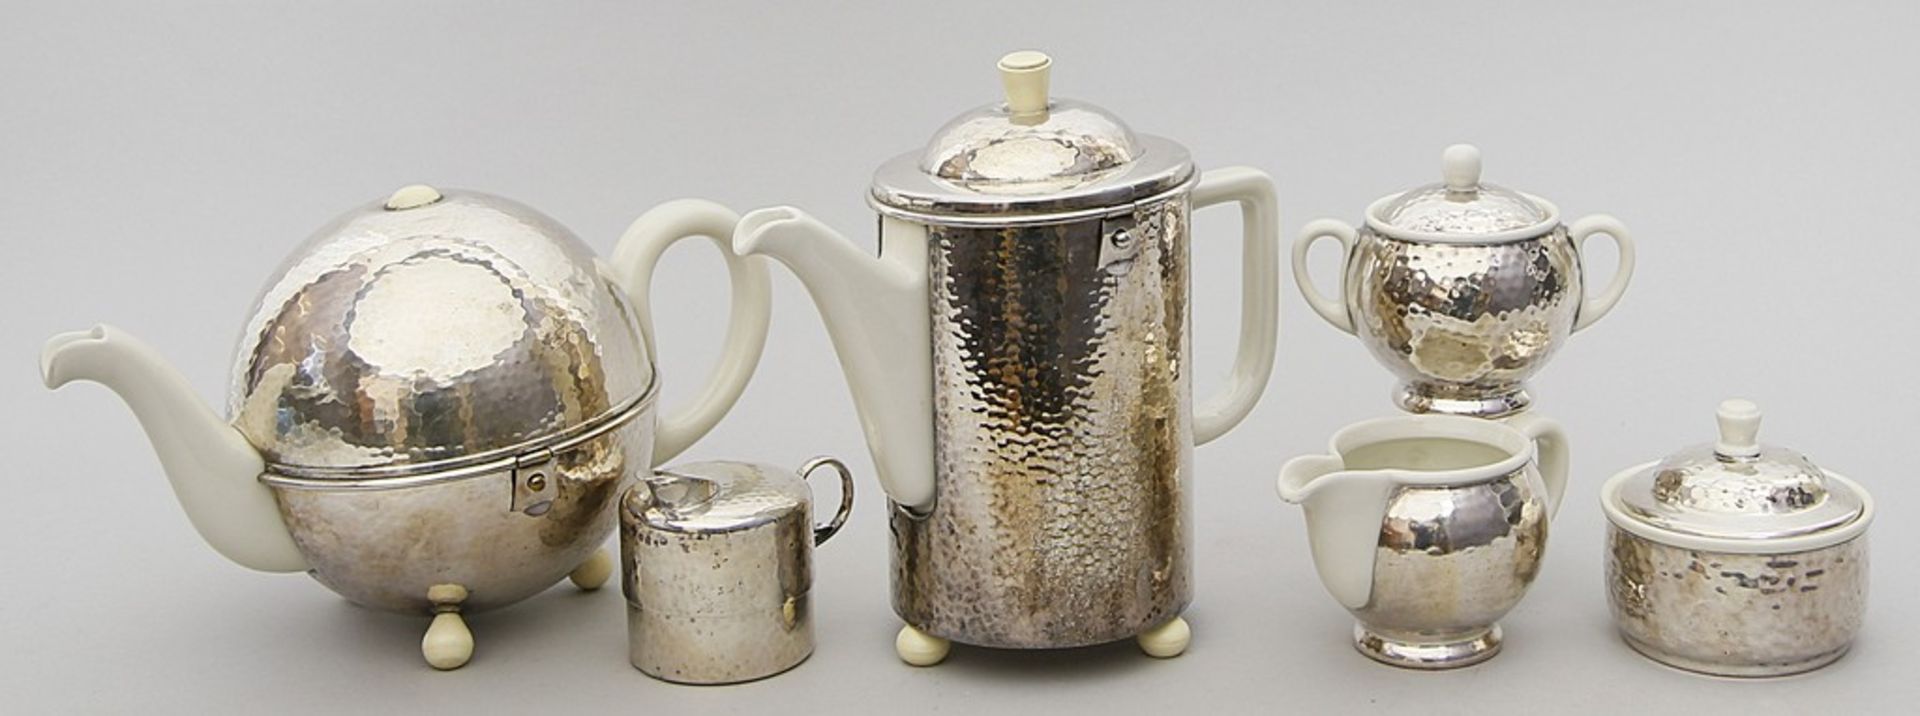 Kaffee- und Teekernstück im Art Deco-Stil, WMF, sechsteilig. Keramik, hell gefasst, v